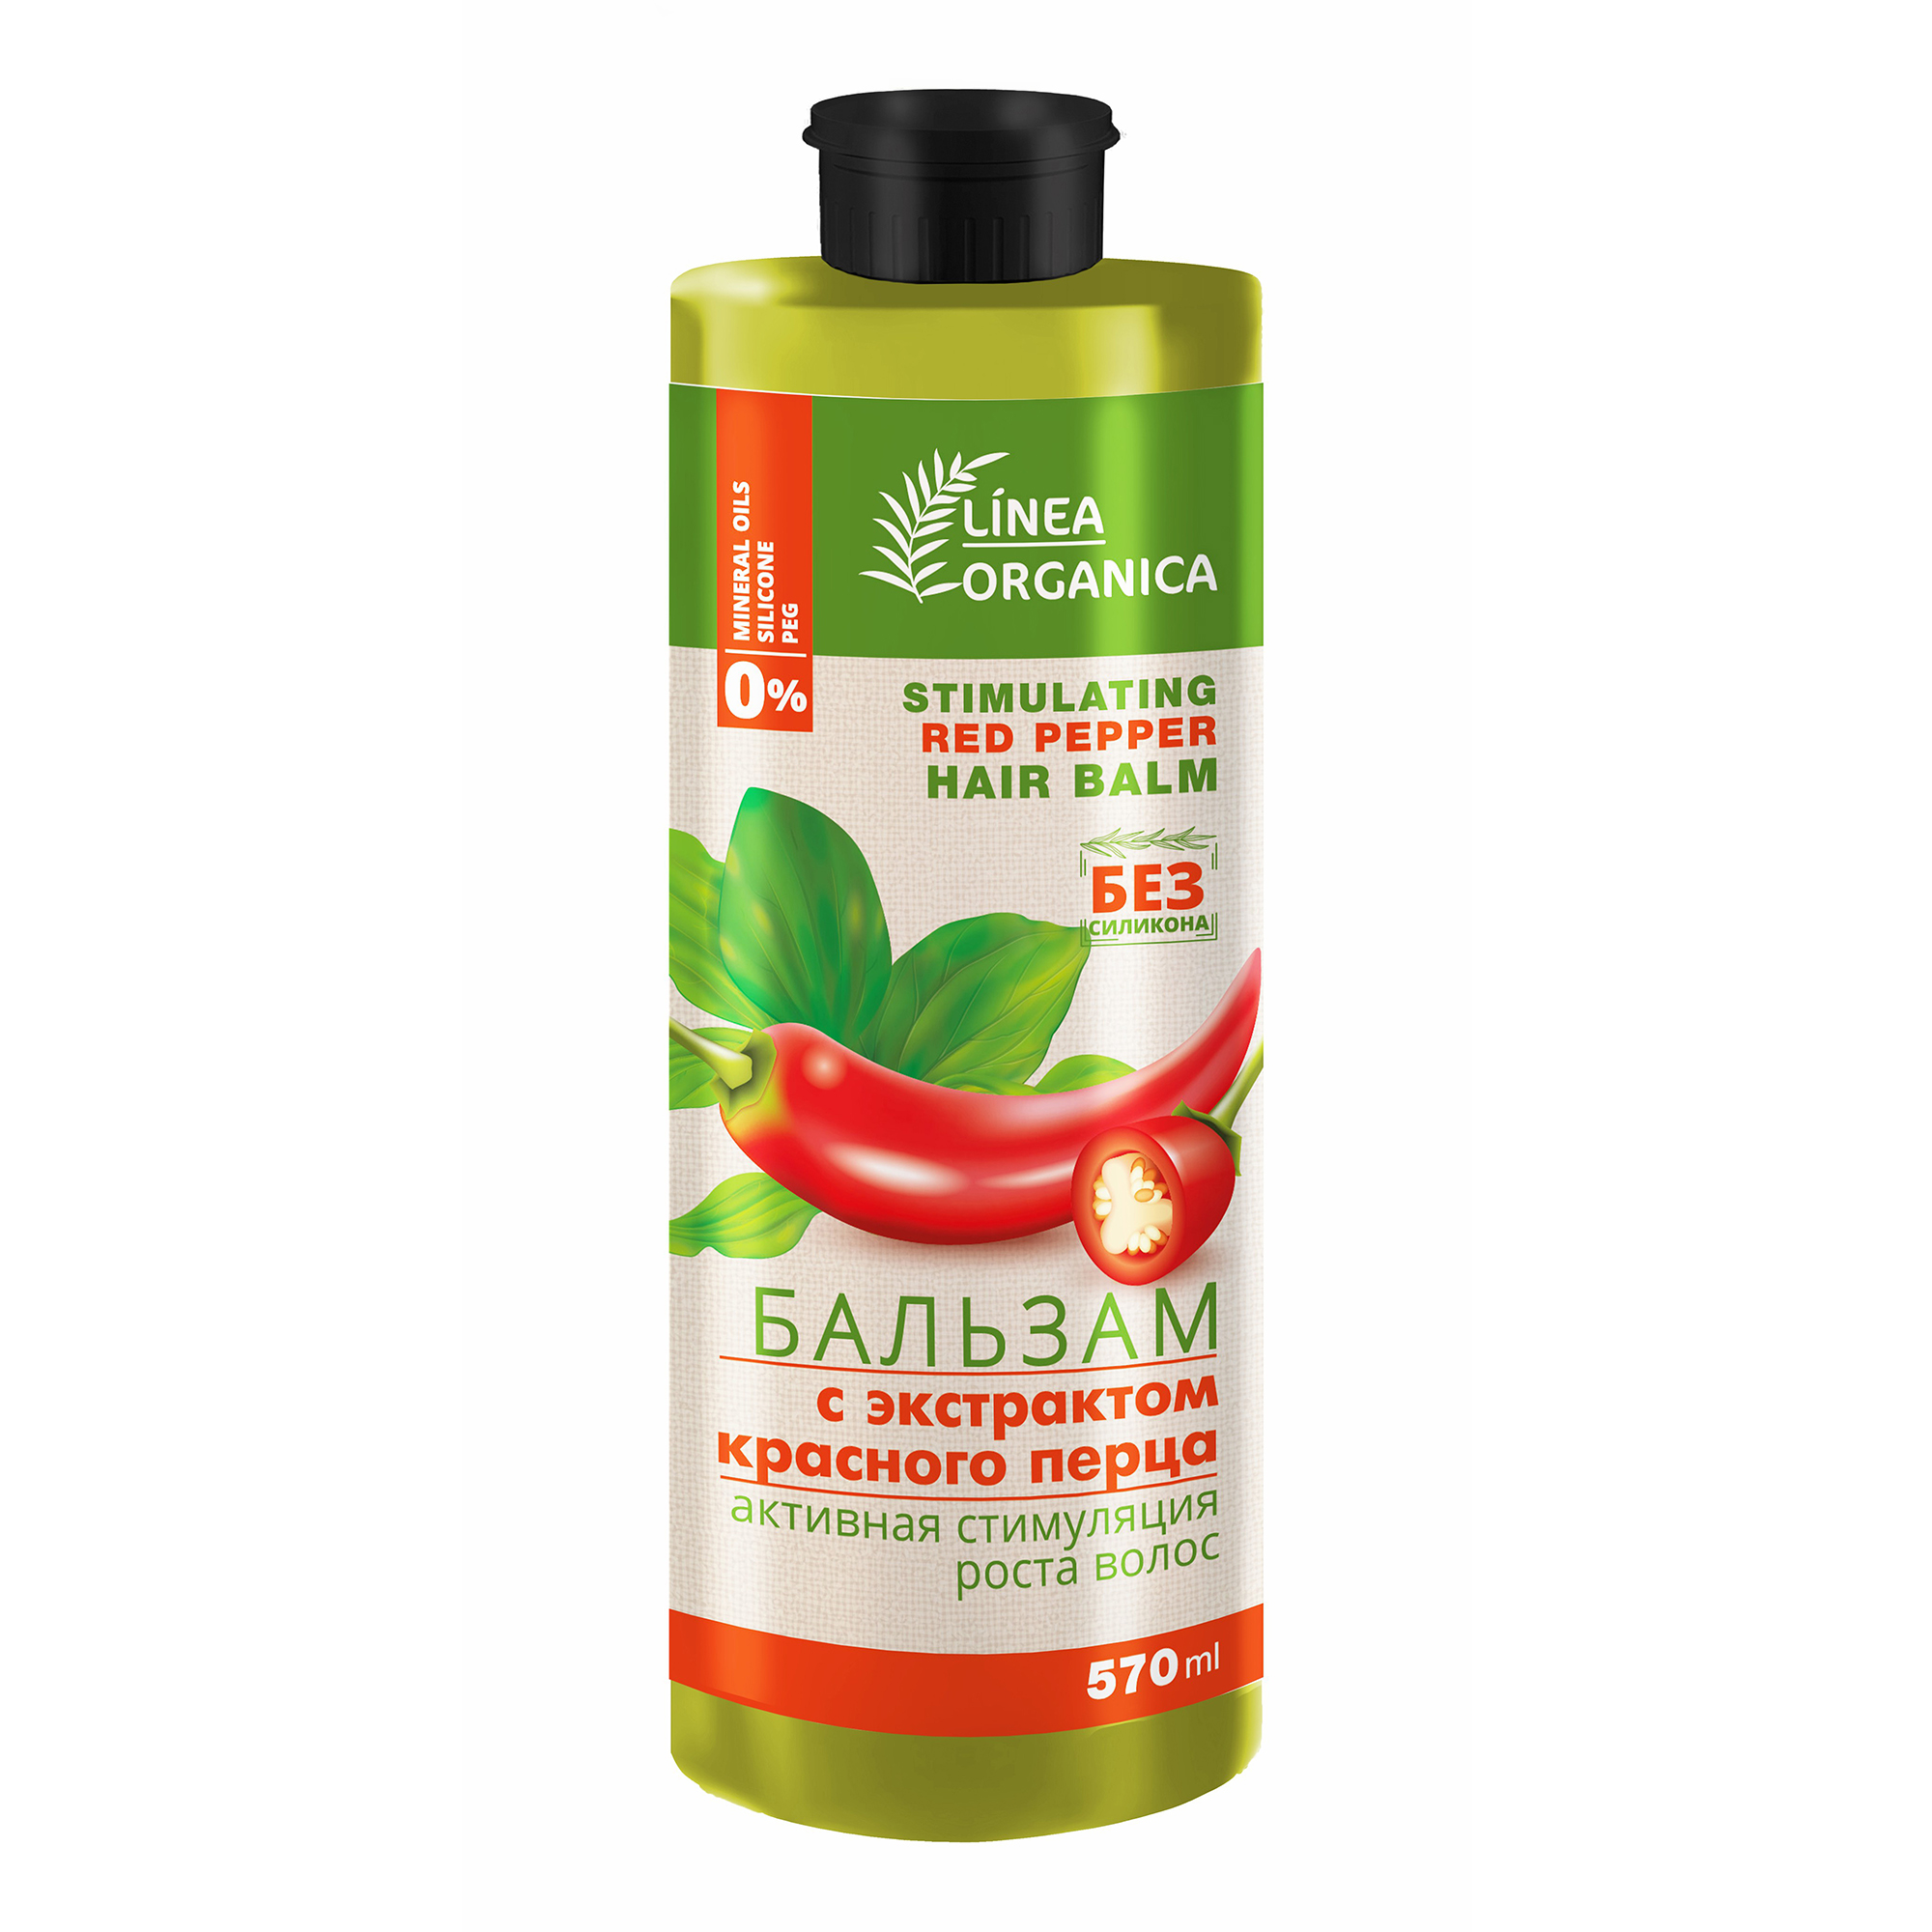 Купить Бальзам Vilsen Linea Organica с экстрактом Красного перца Cтимуляция роста волос 570 мл